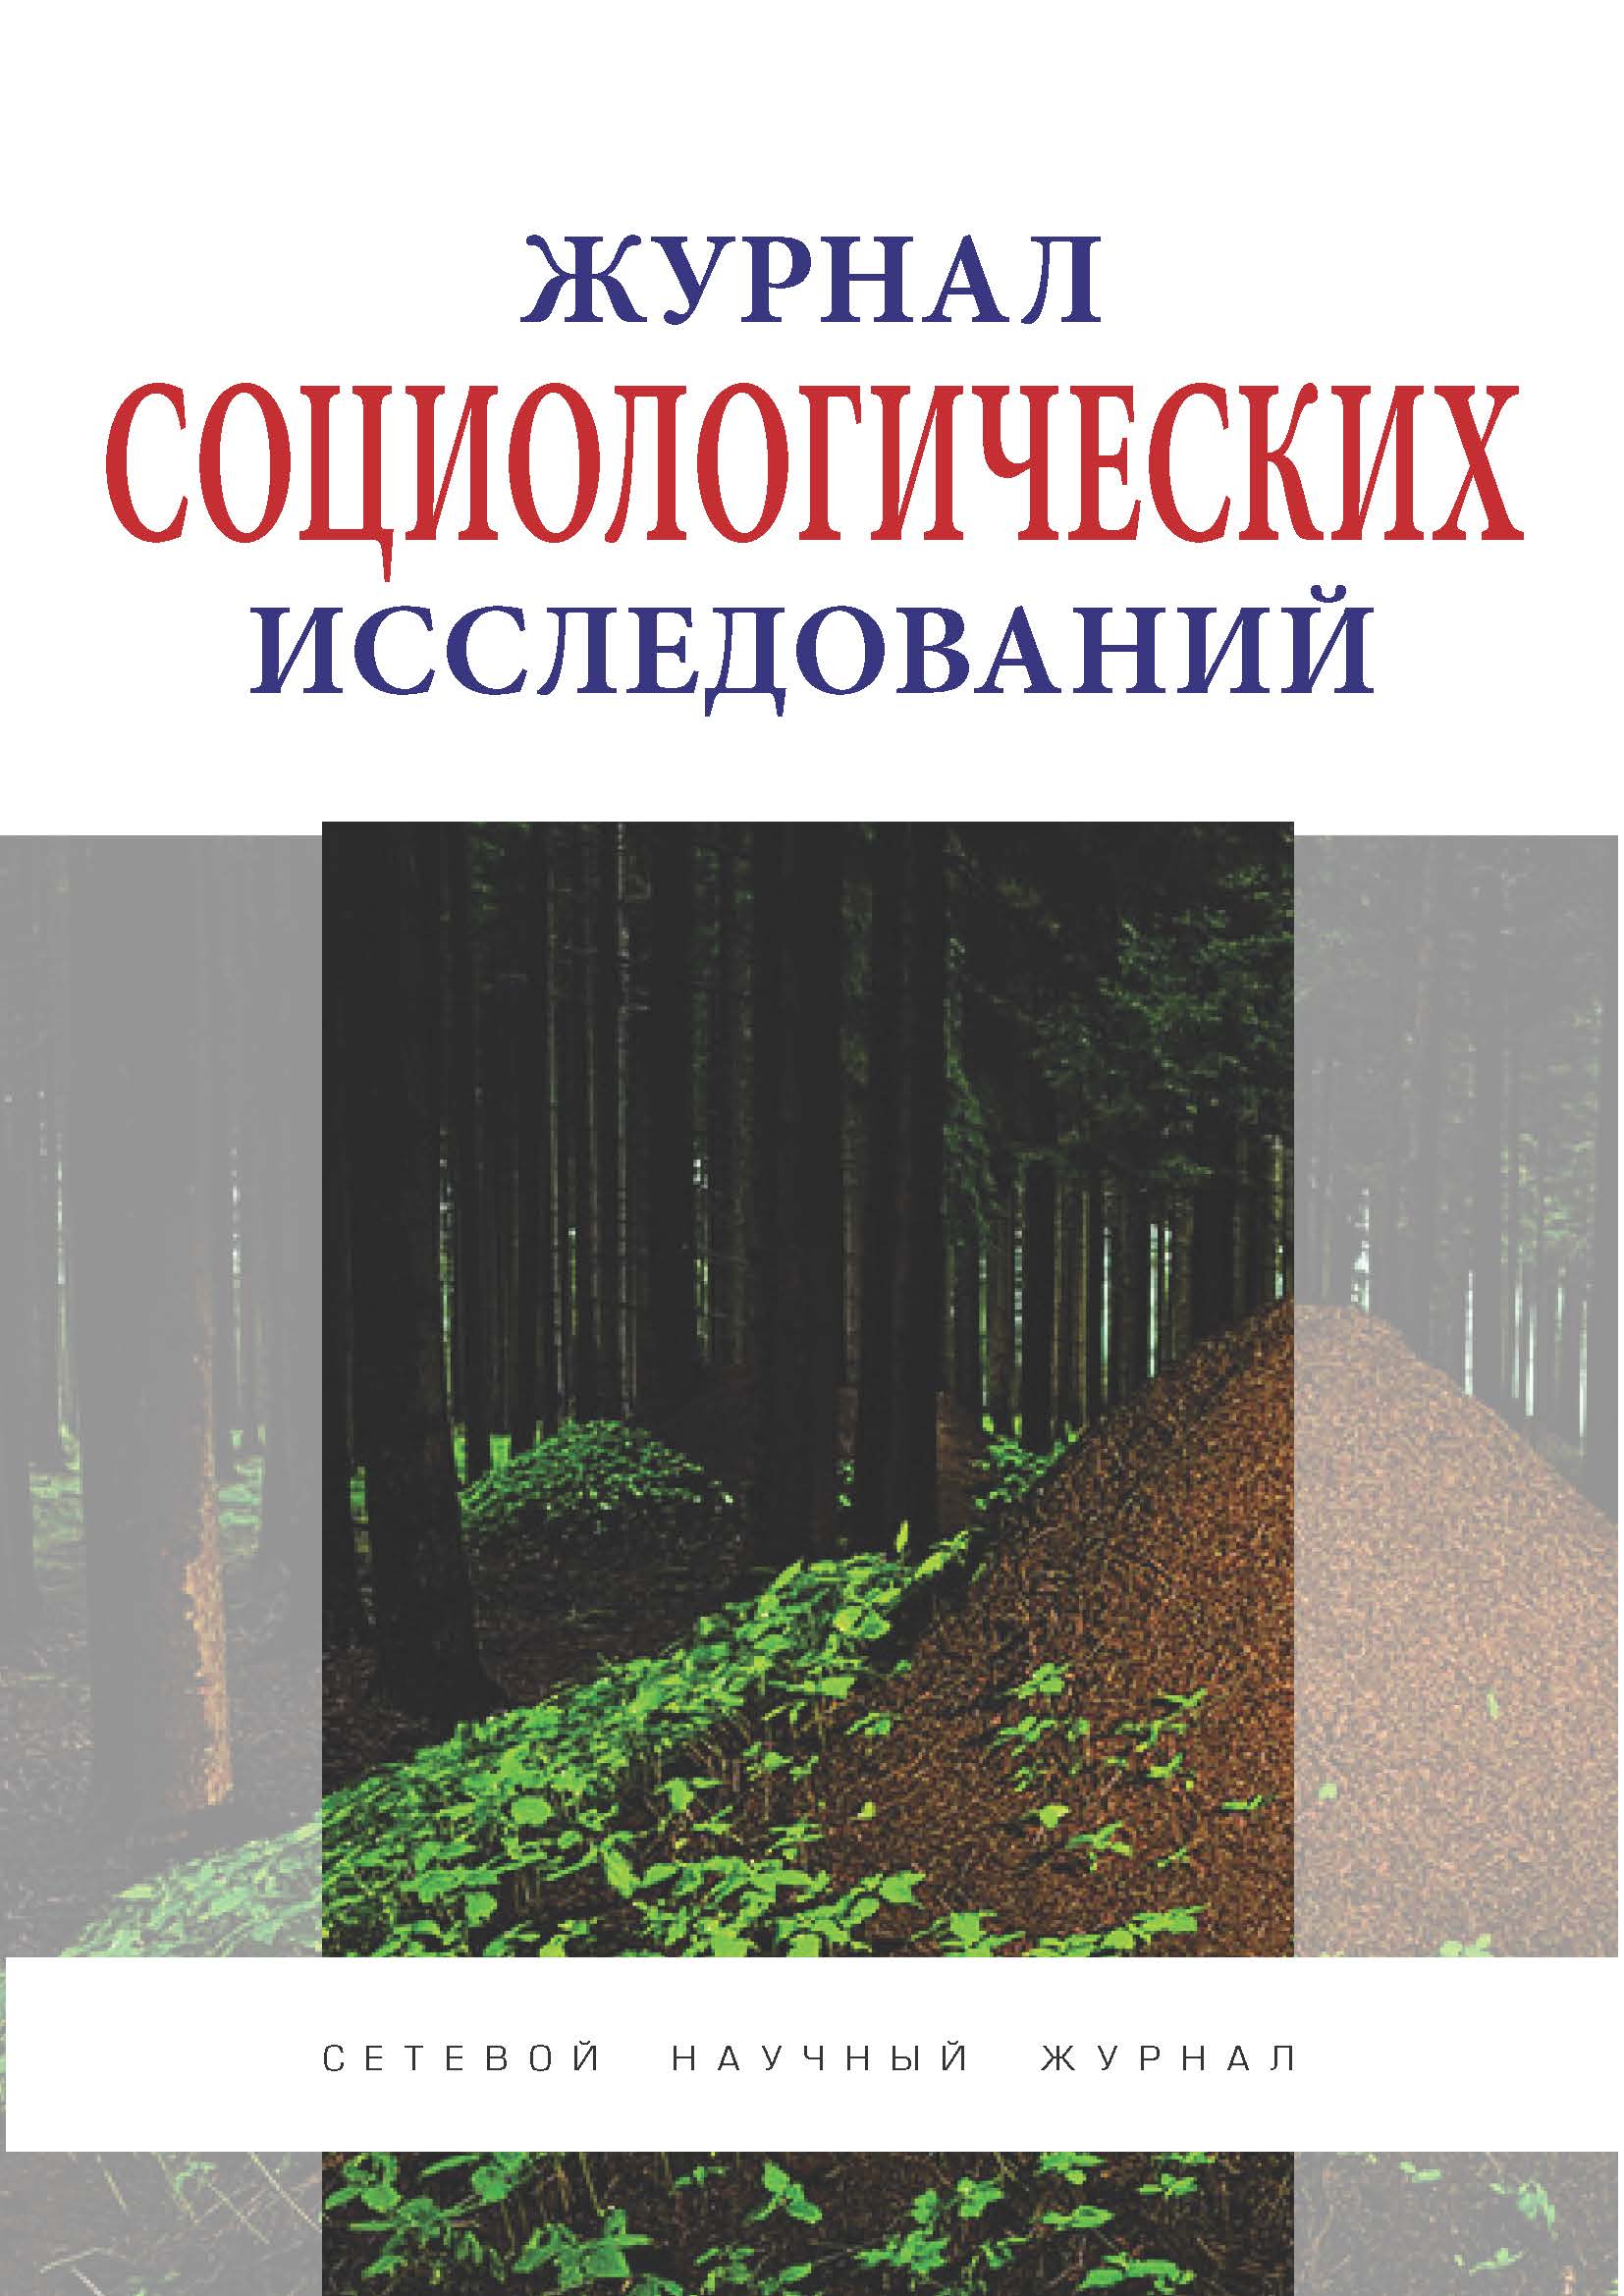             Актуальные проблемы влияния экологии на здоровье населения России
    